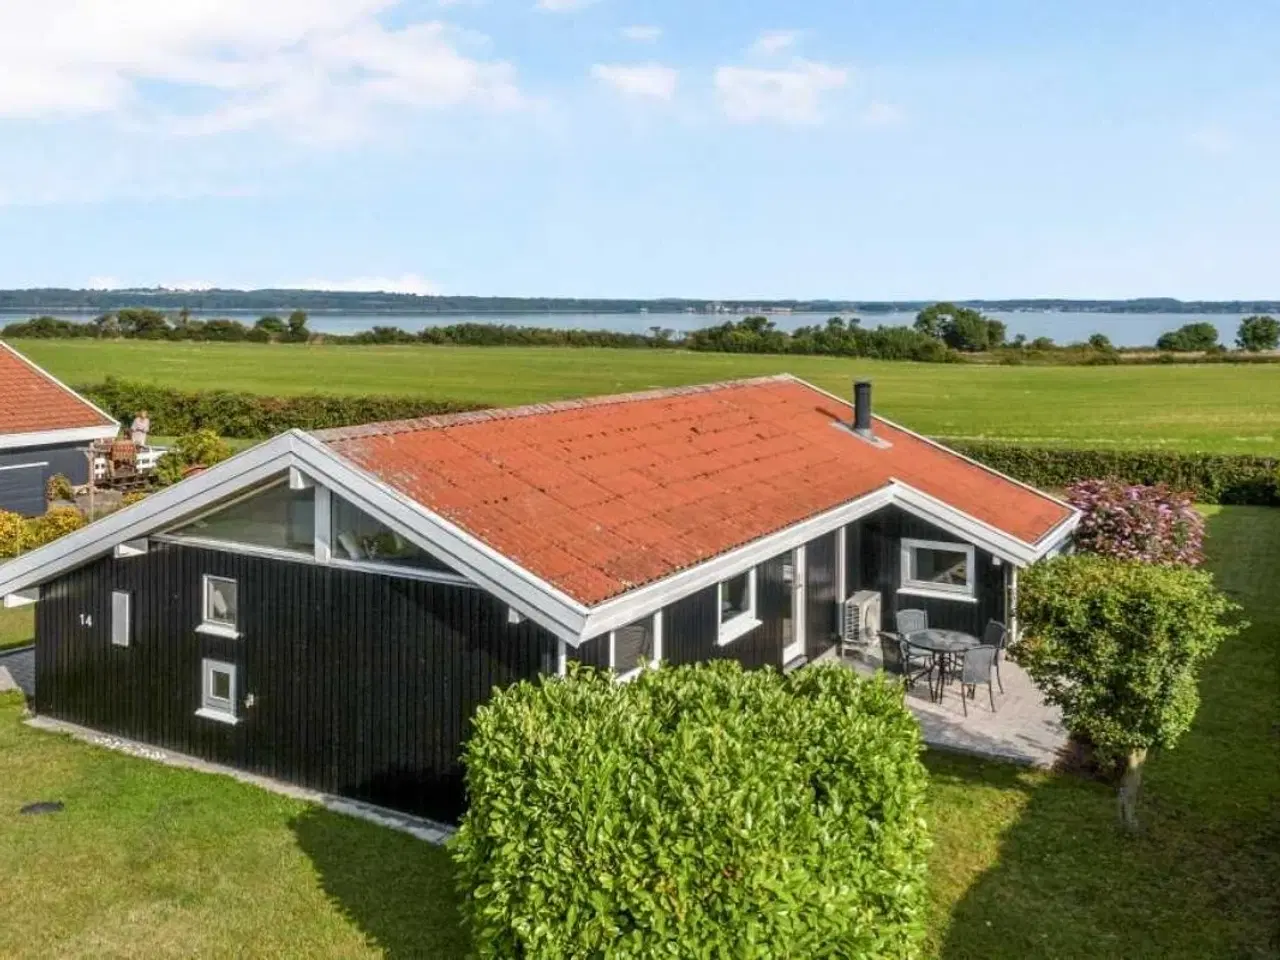 Billede 1 - Sommerhus på Tåsinge med skøn panoramaudsigt ud over vandet.